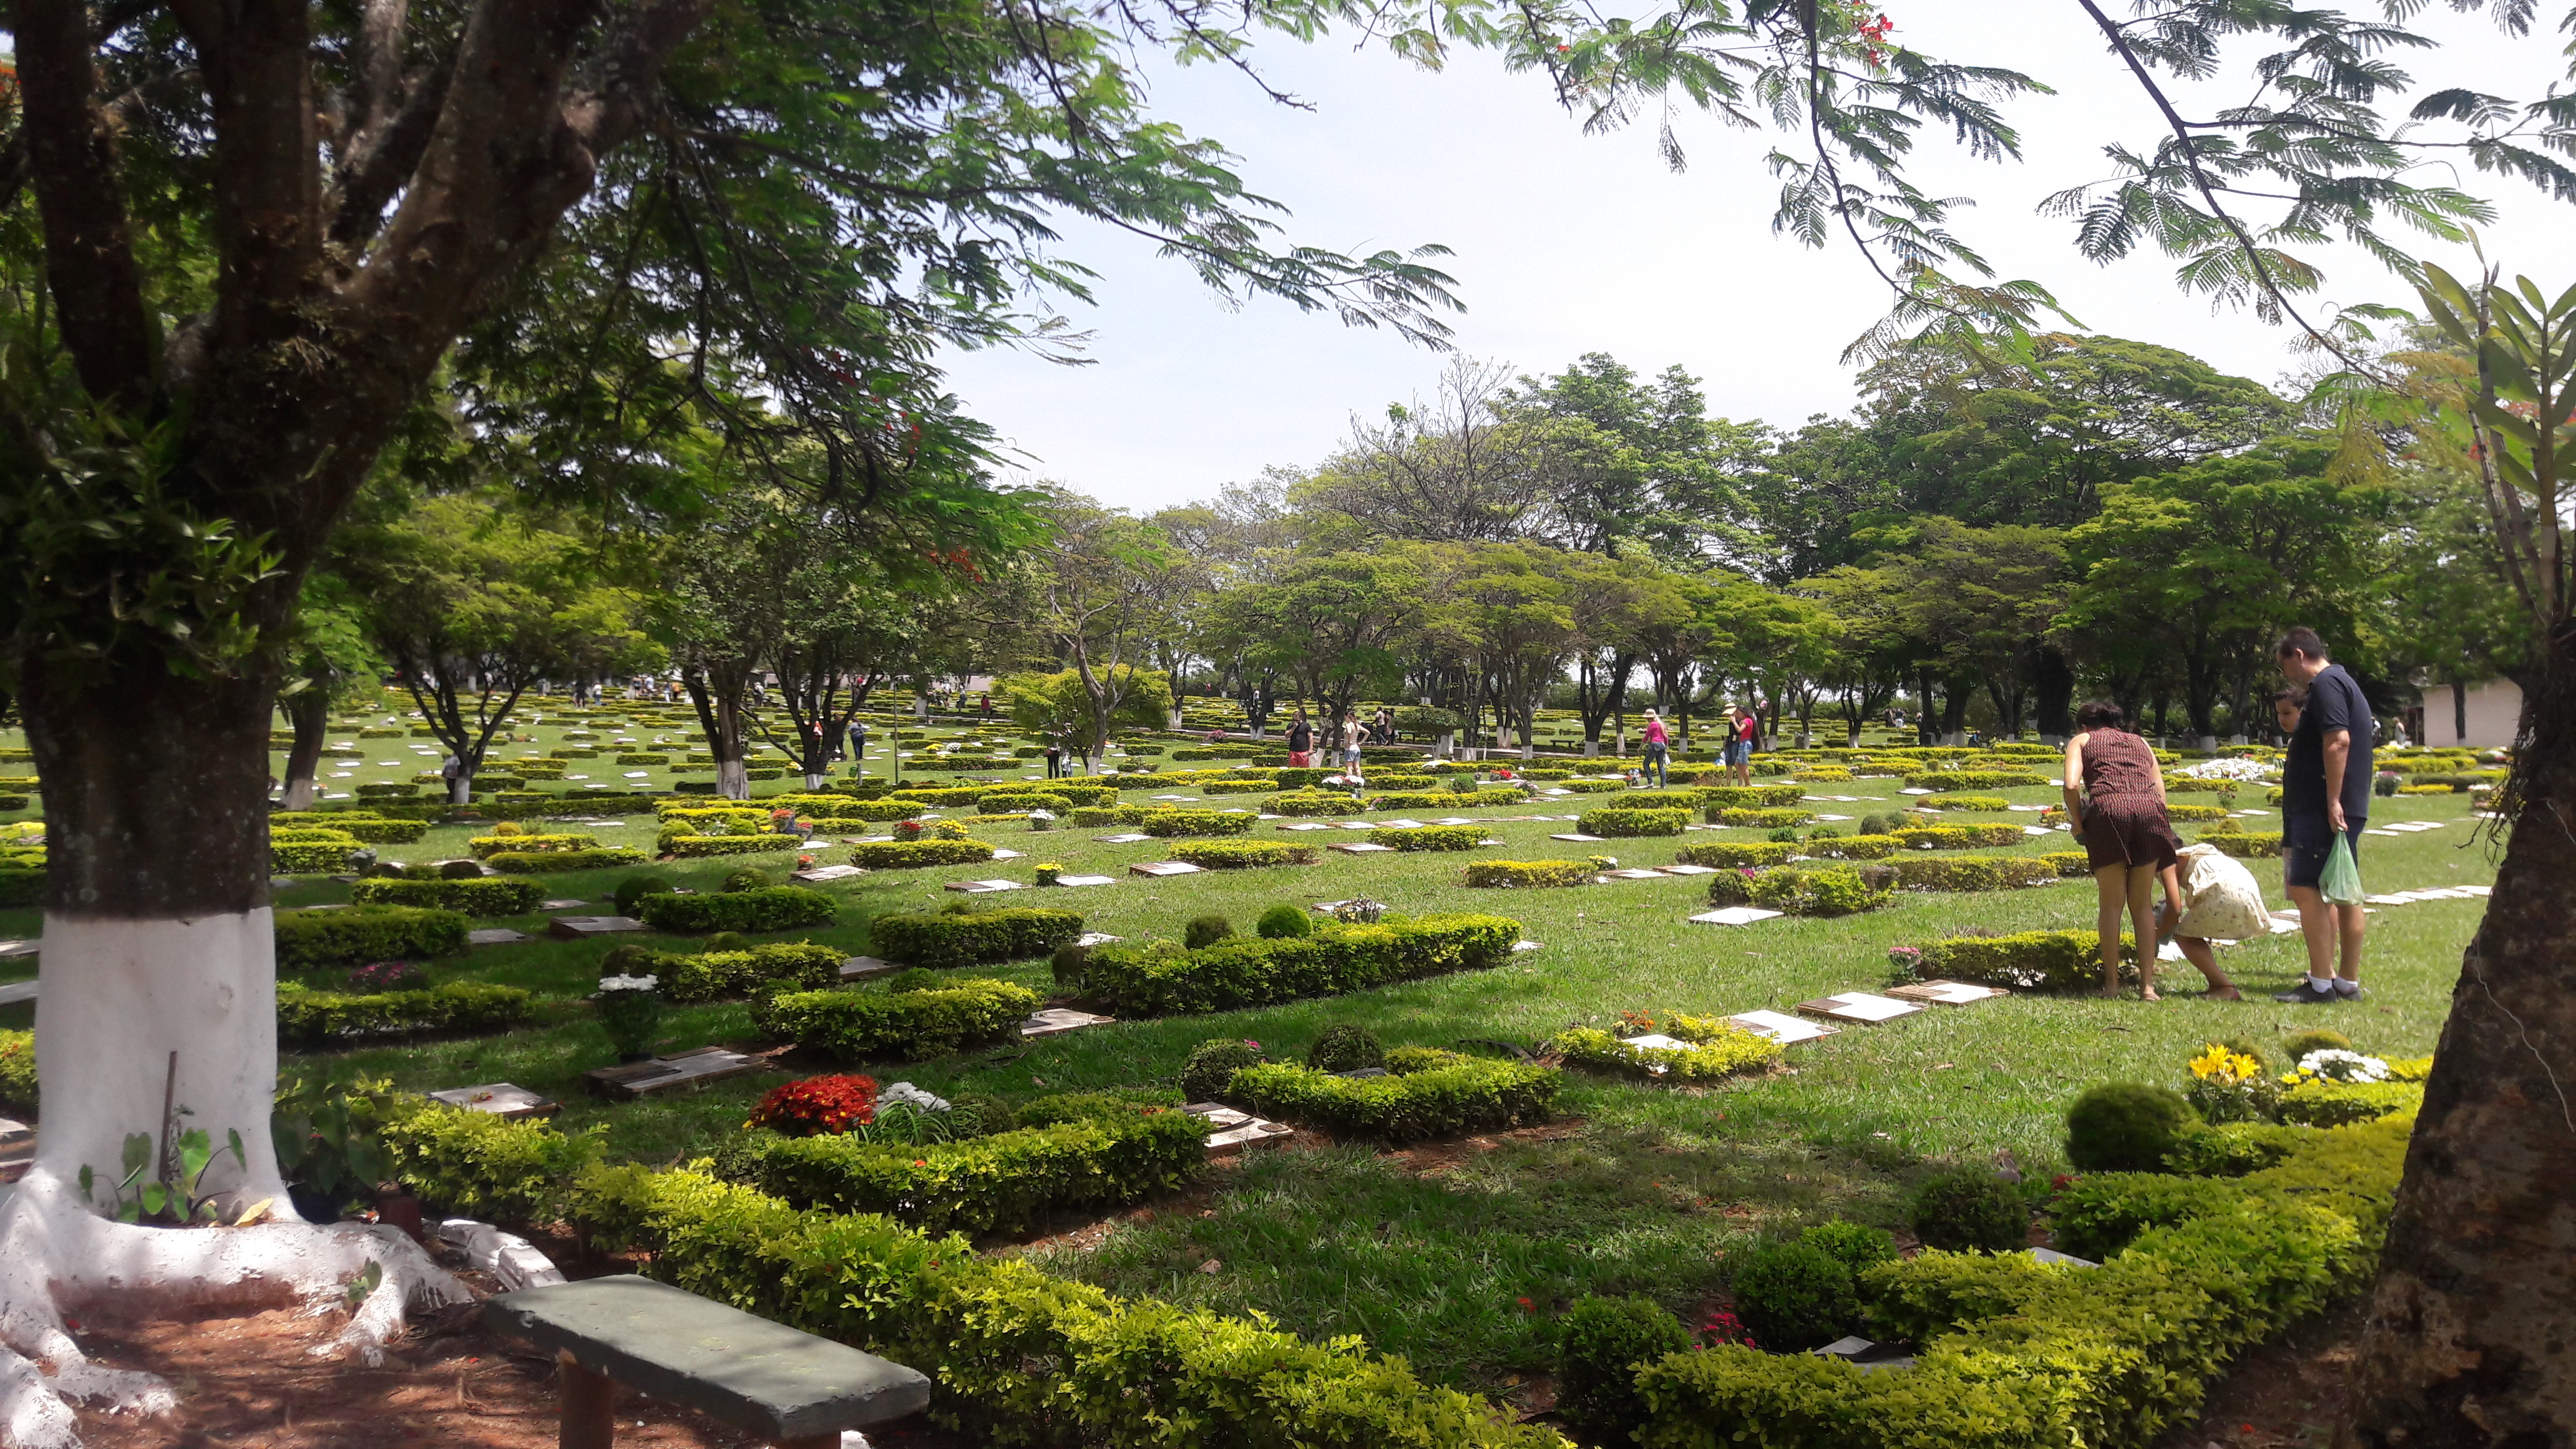 Cemitério Parque Jardim do Ypê receberá visitação no Dia de Finados